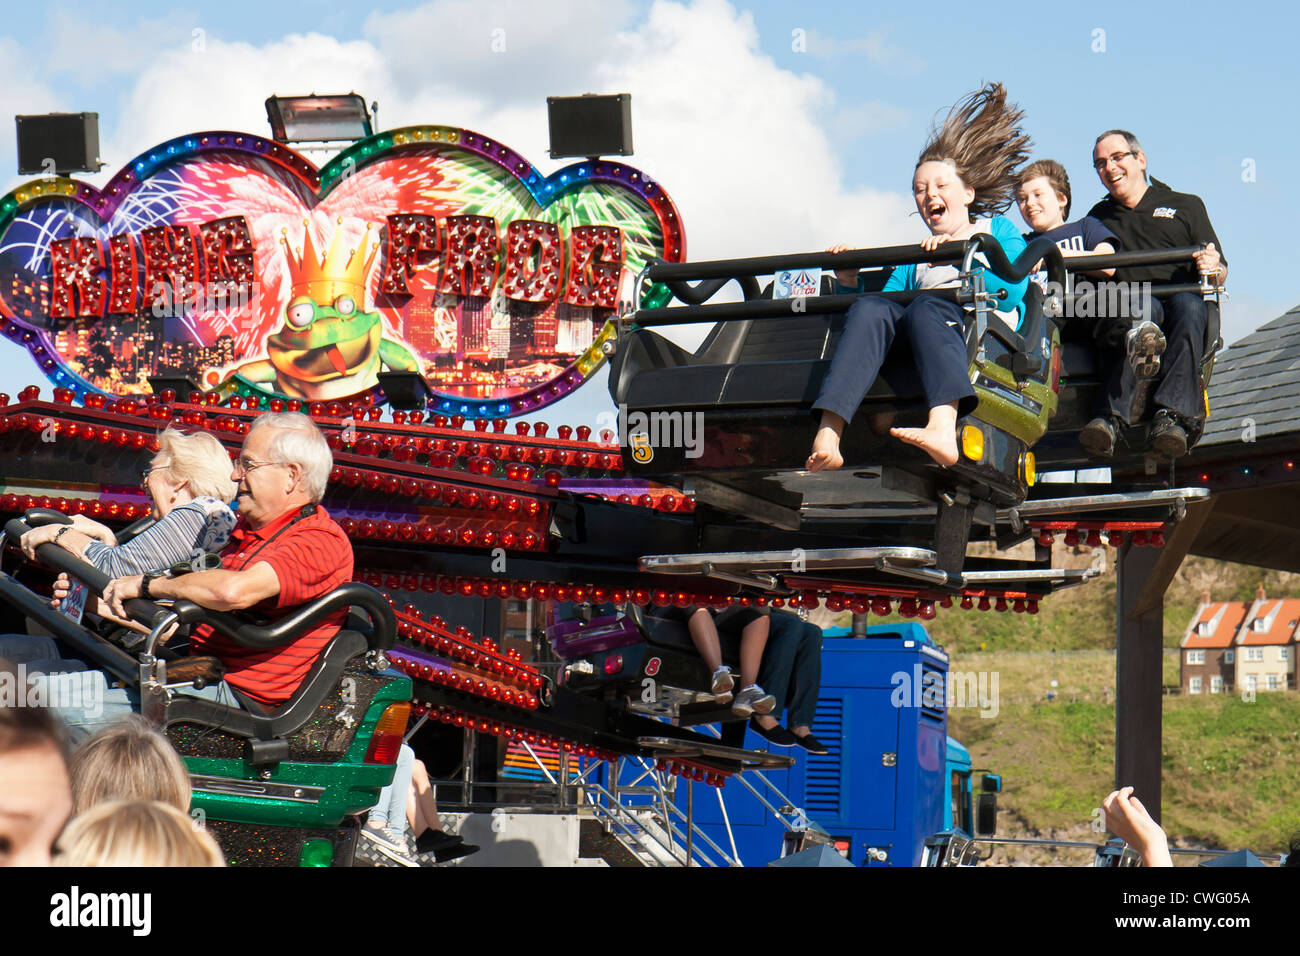 Fairground rides at Whitby Regatta Stock Photo